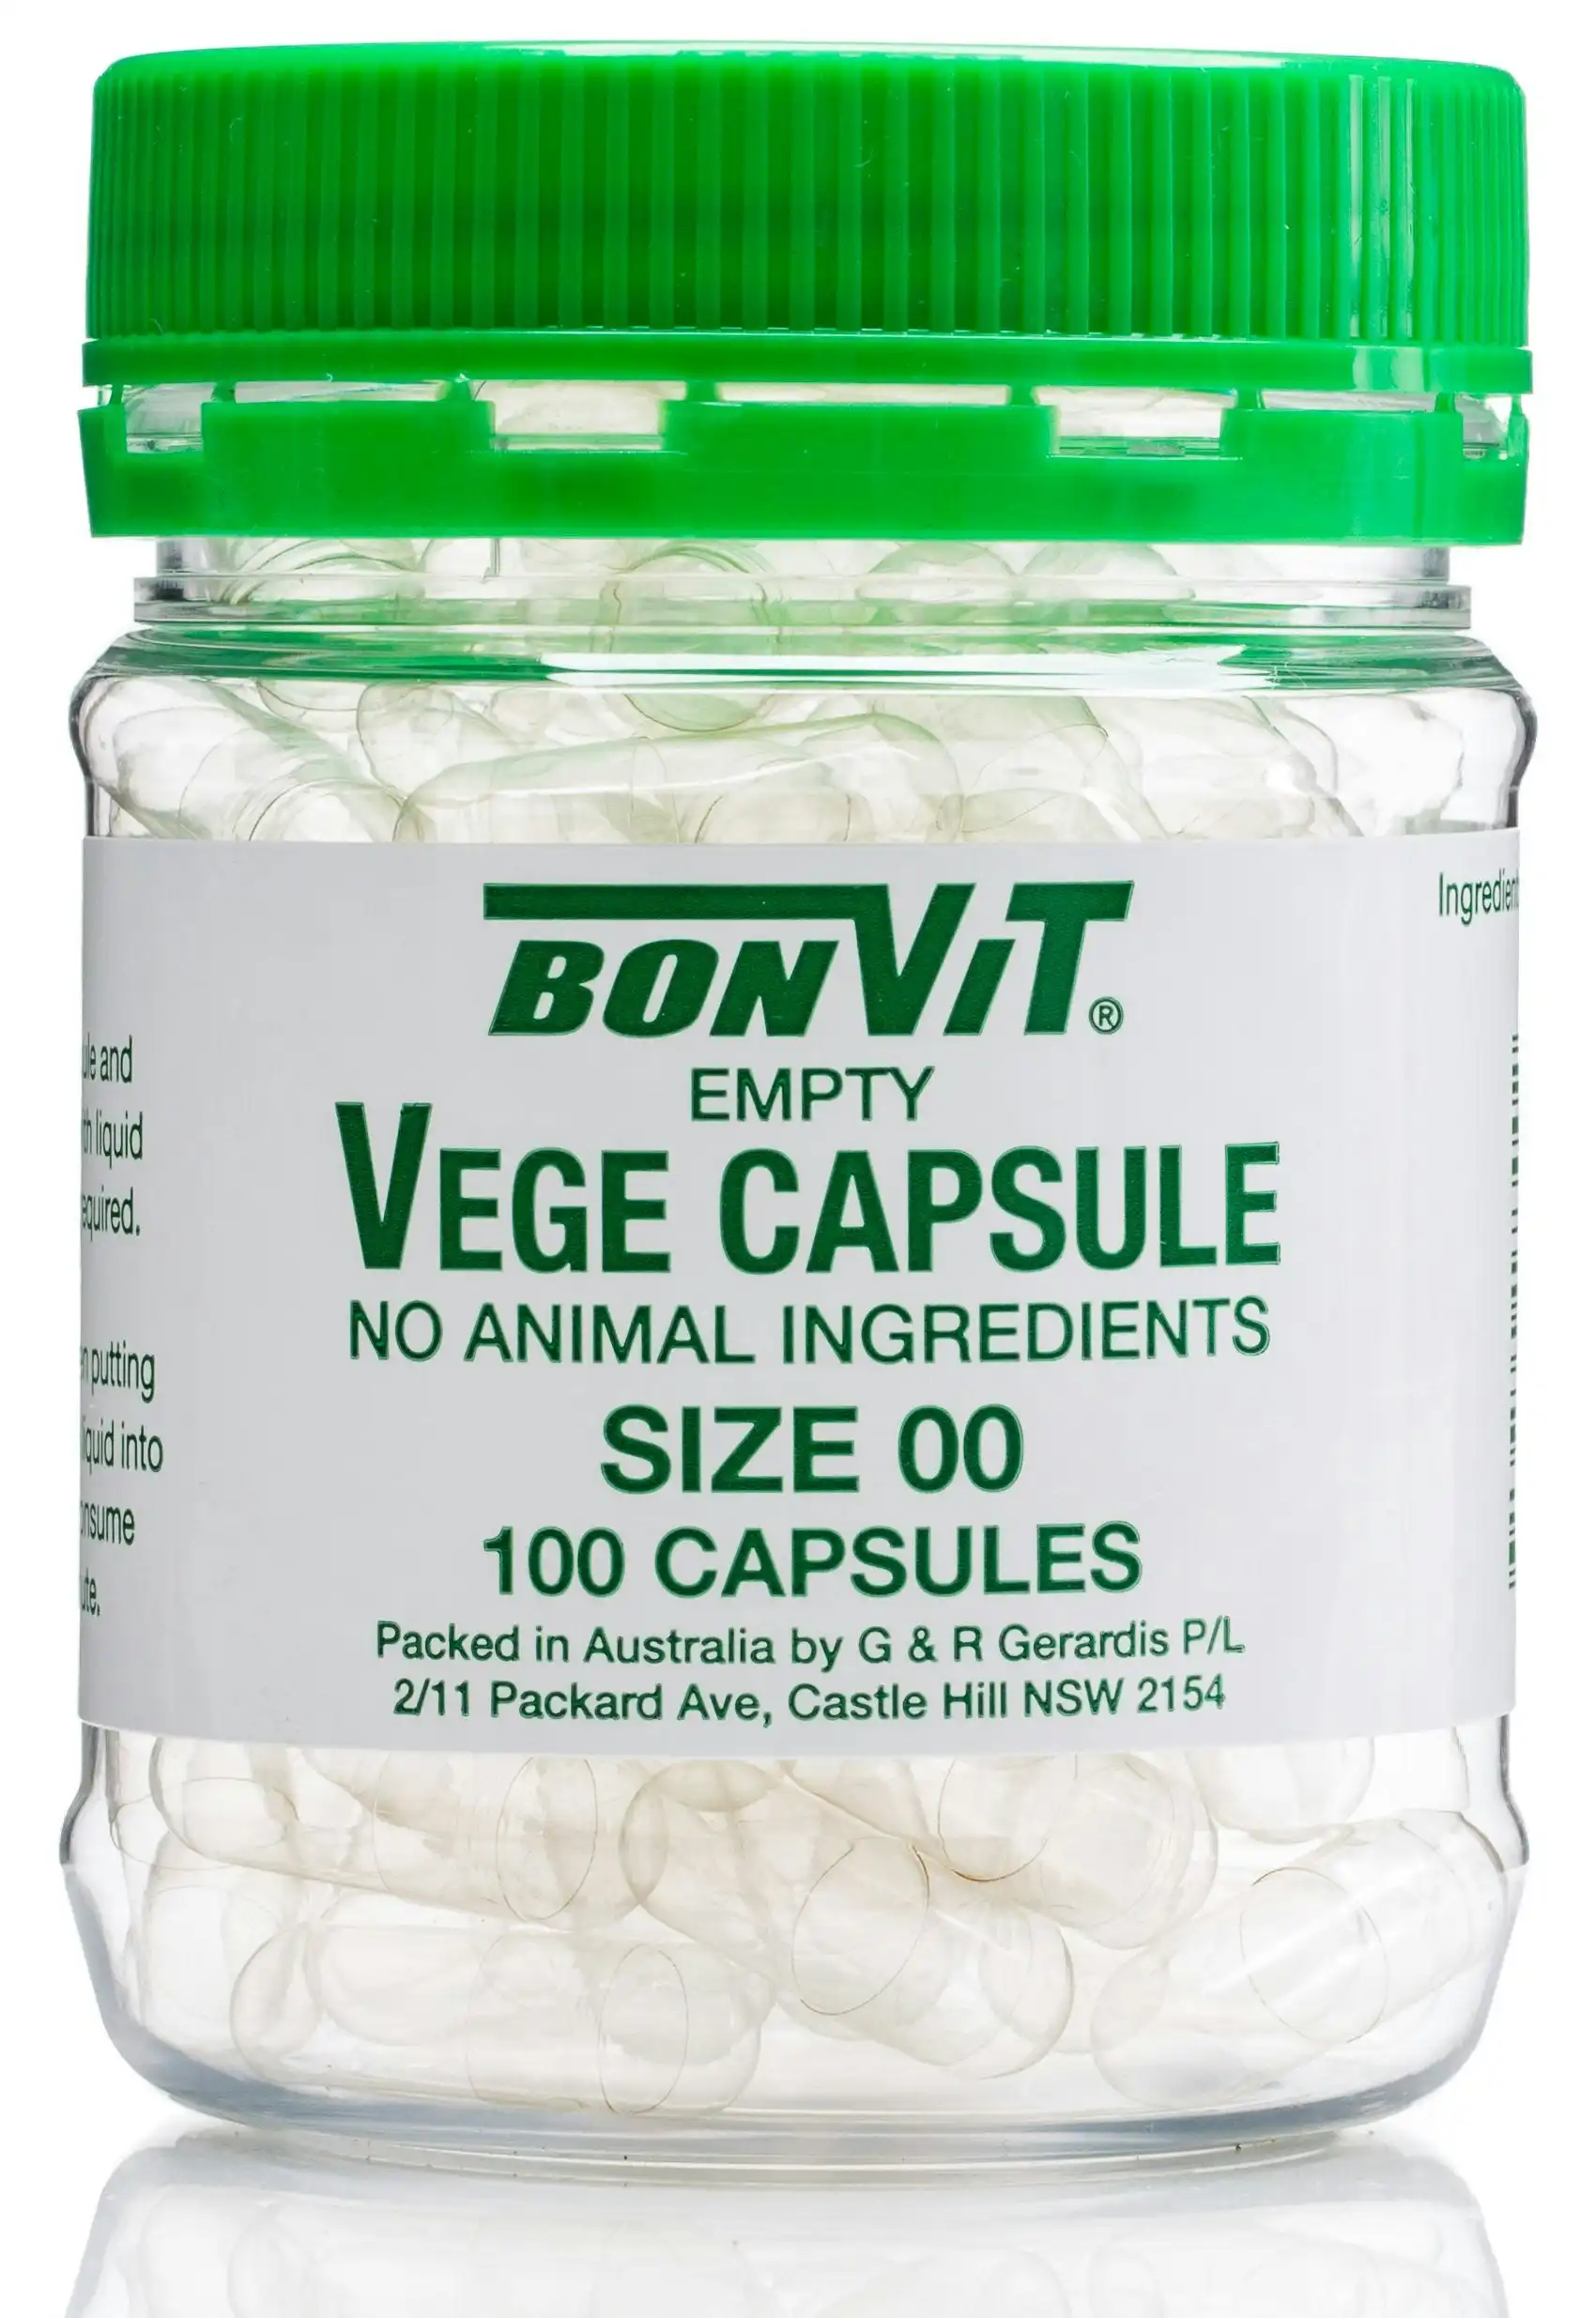 Bonvit Vege Capsules 00 size 100c